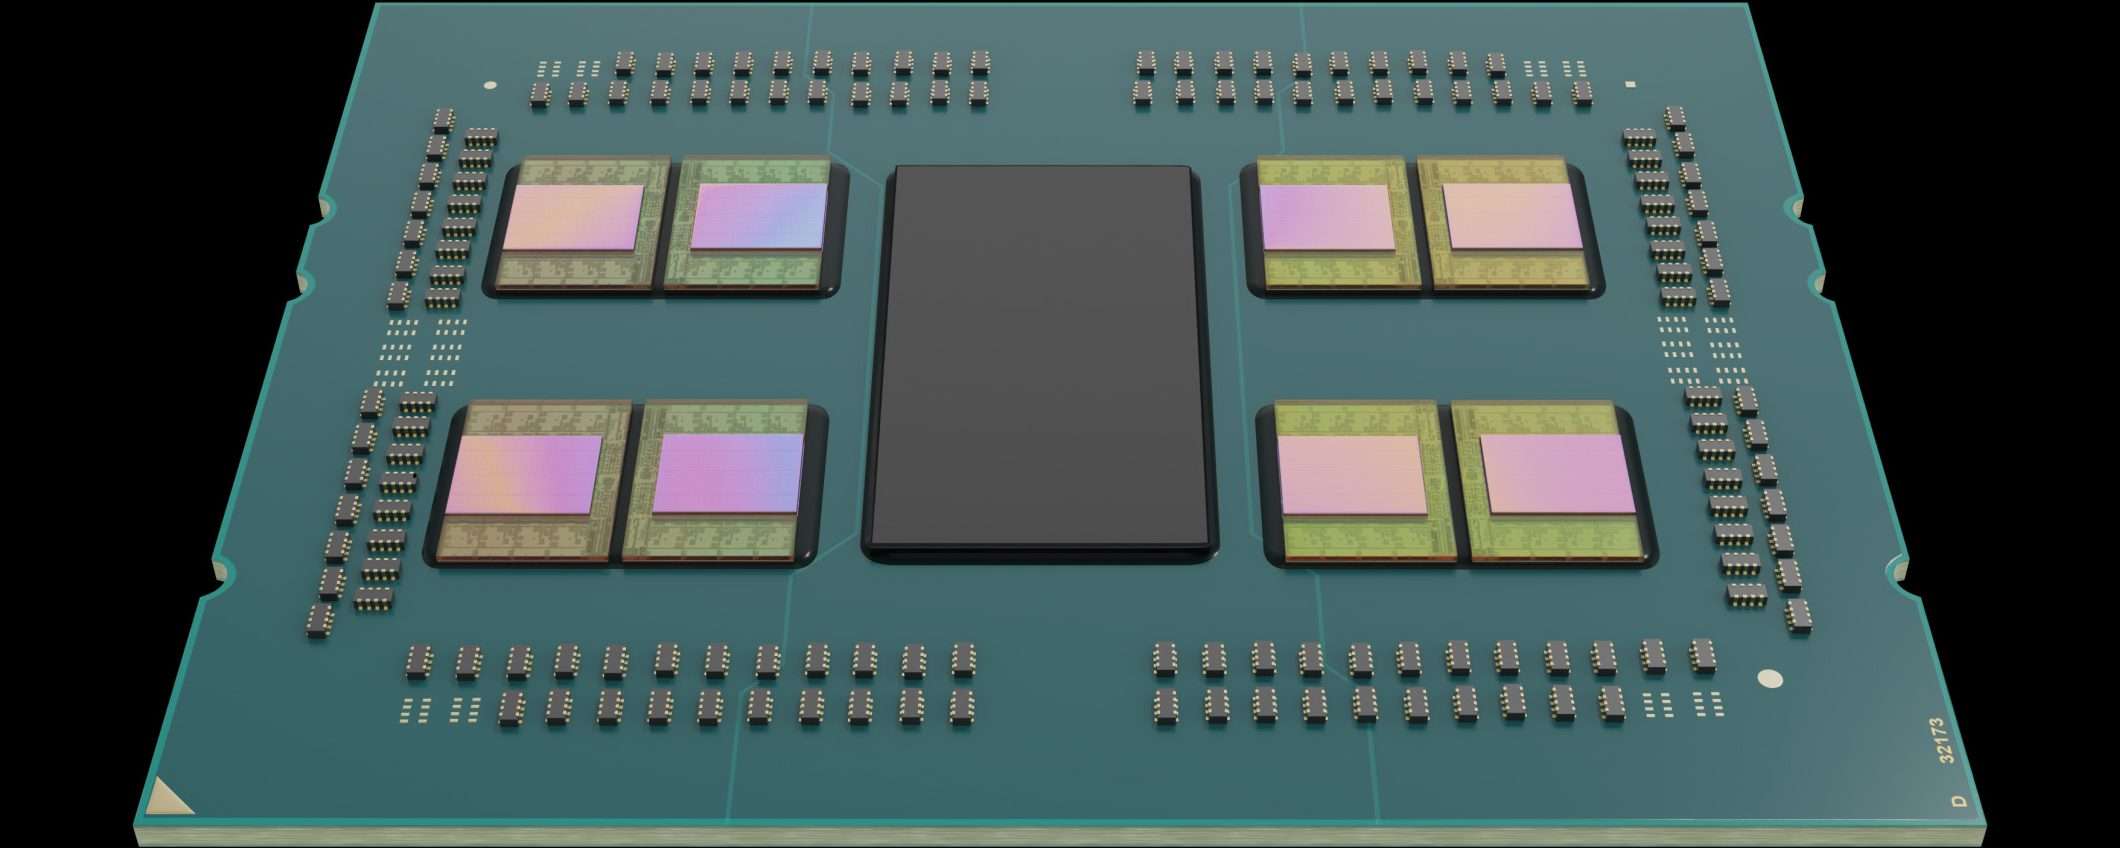 AMD EPYC Milan-X: CPU server con 768 MB di cache L3